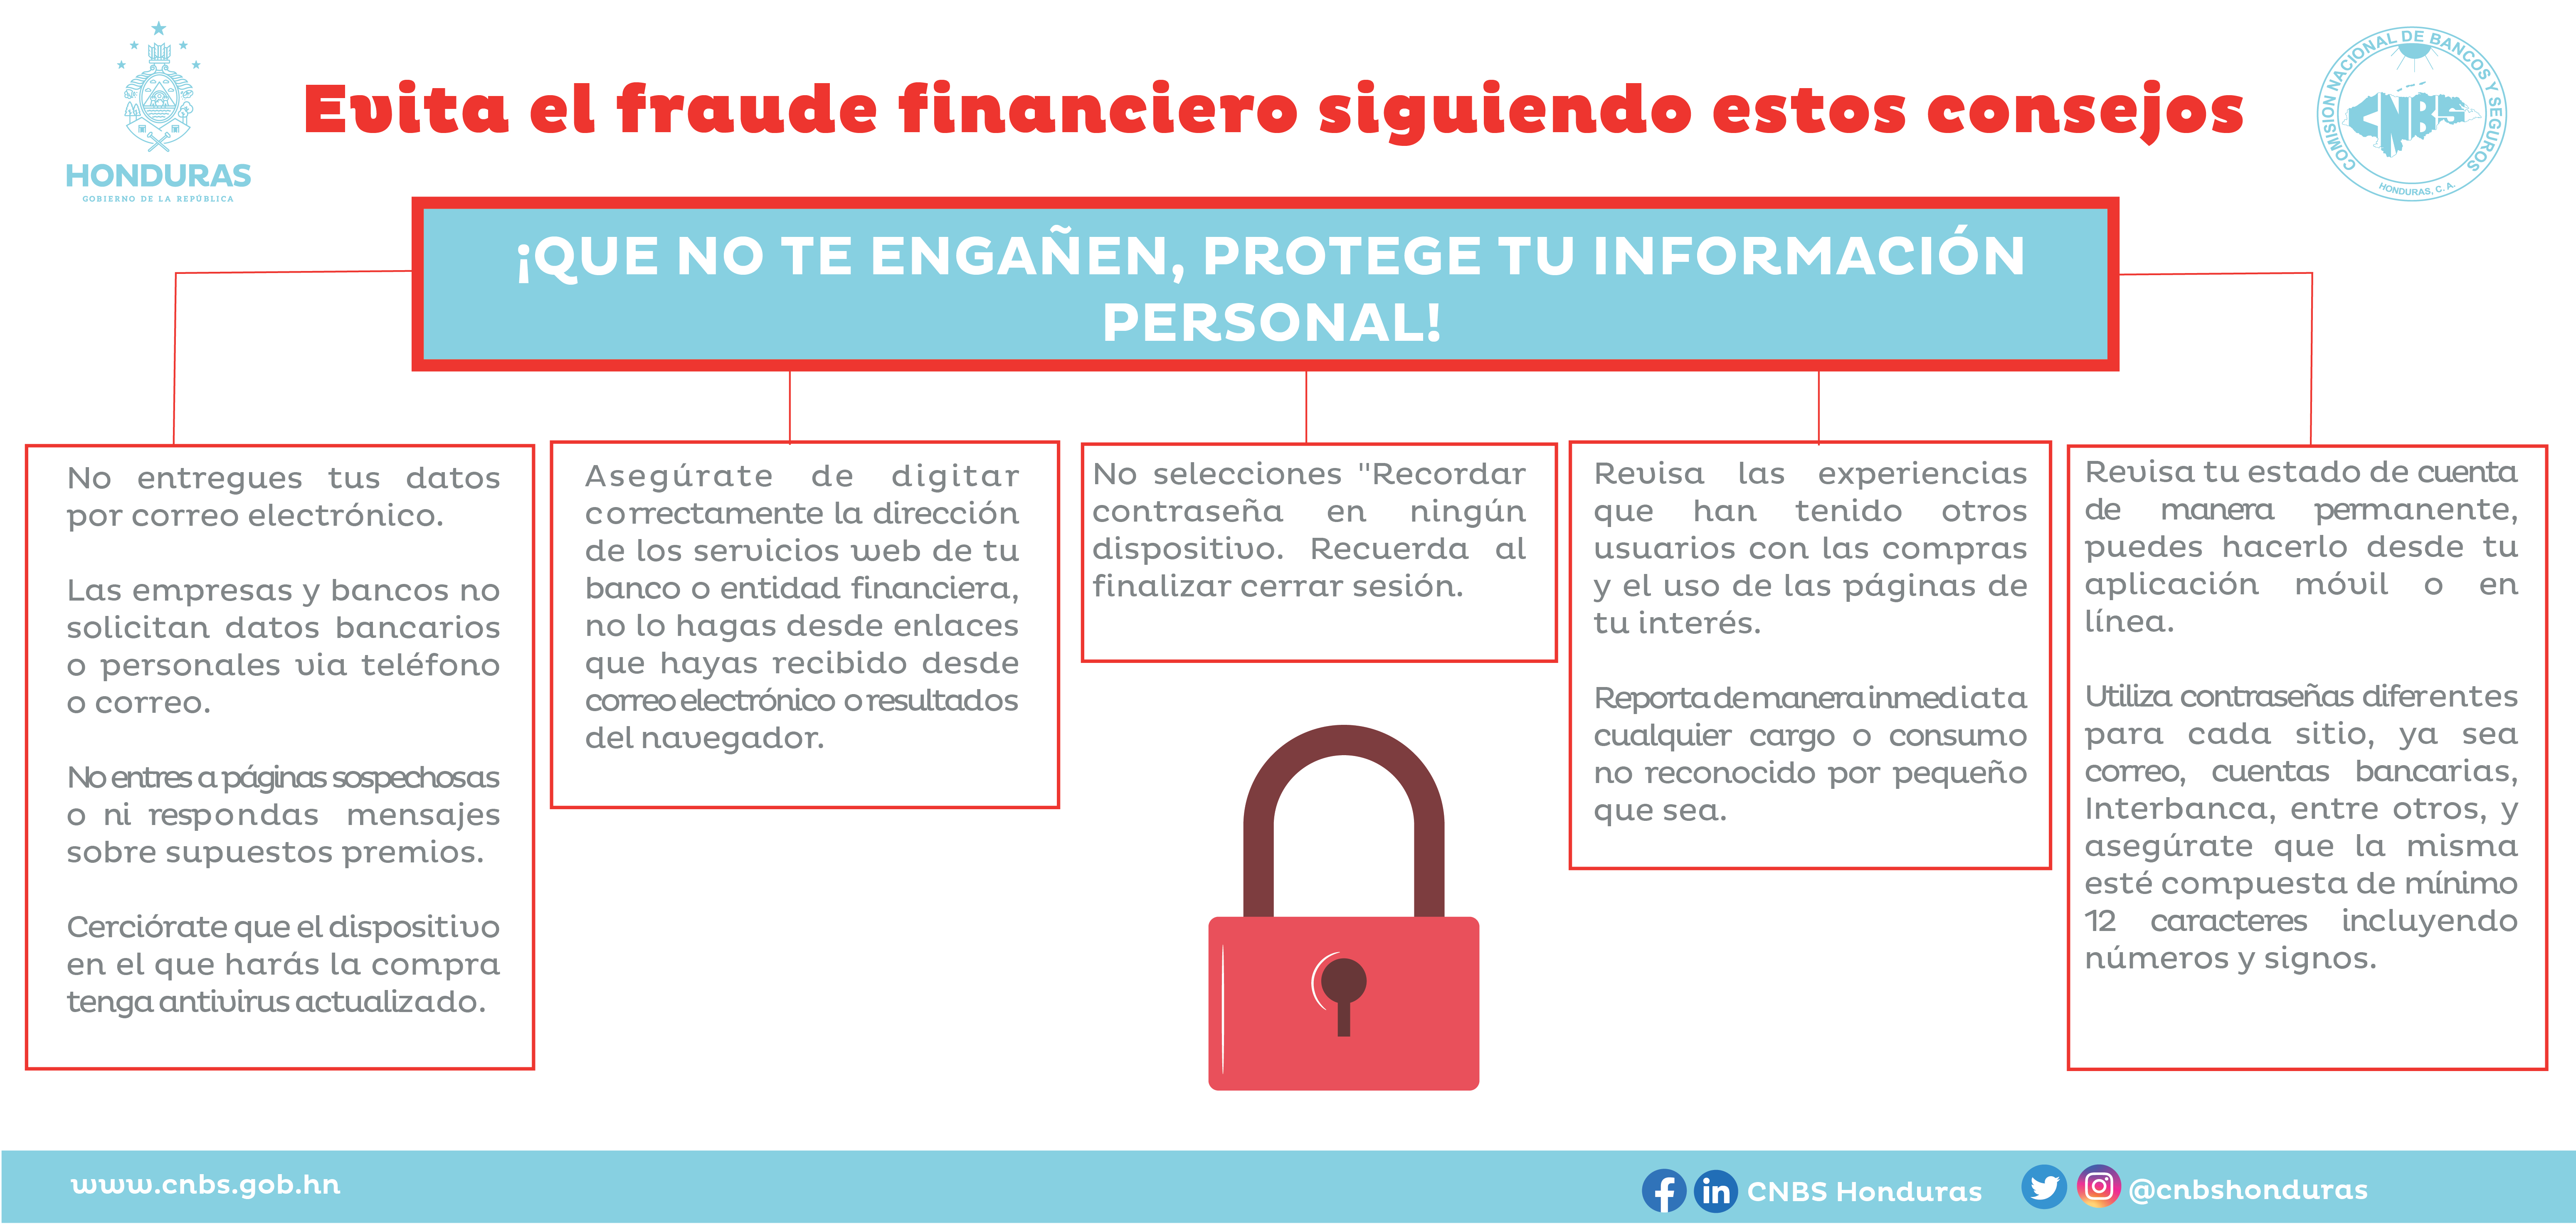 Evita_Fraude_Financiero